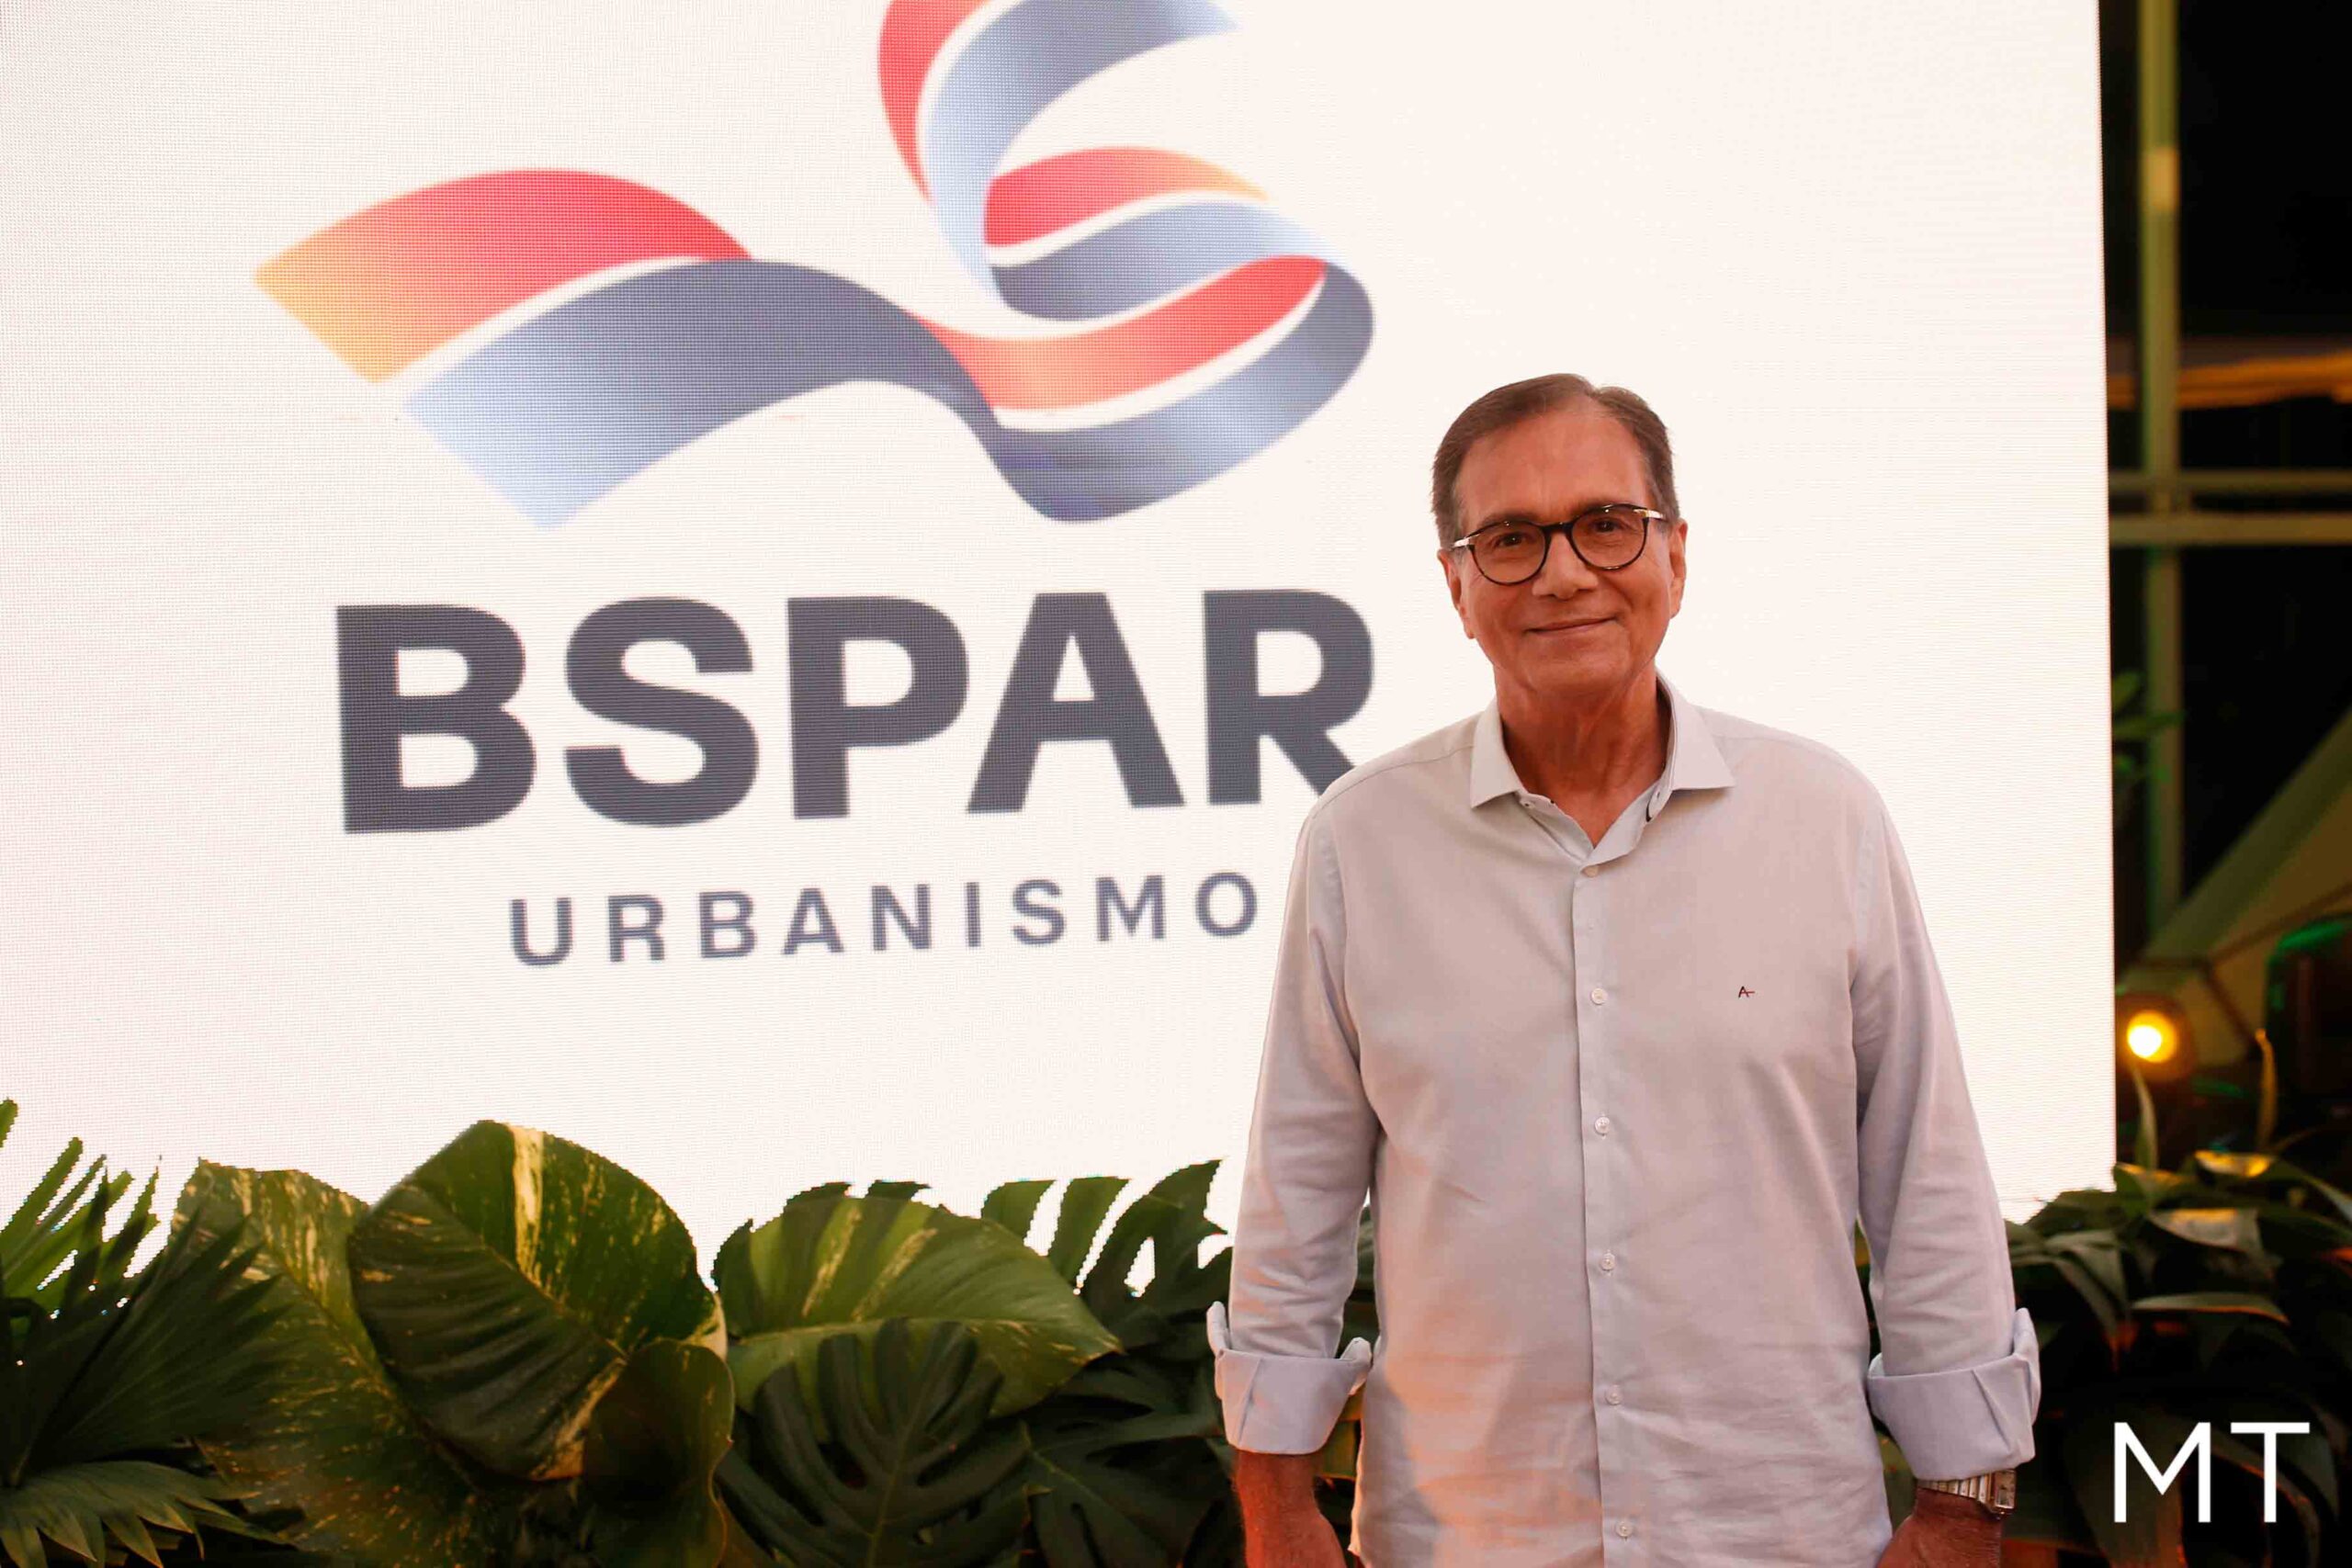 BSPar comemora 15 anos com anúncio feito por Beto Studart de novo projeto